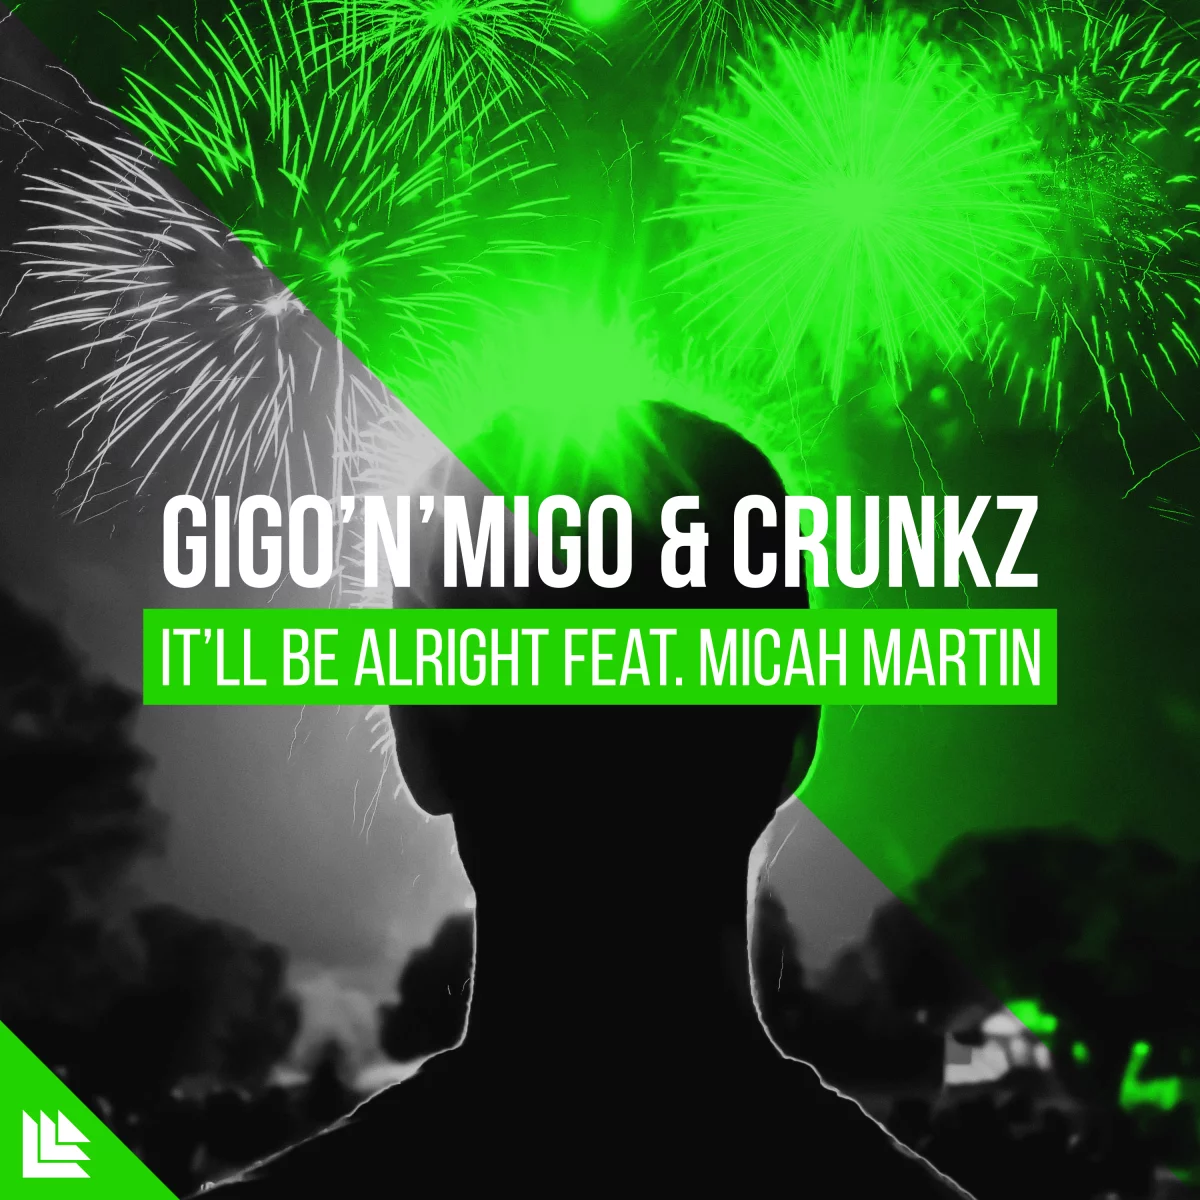 It’ll Be Alright - Gigo’n’Migo & Crunkz⁠ feat. Micah Martin⁠ 